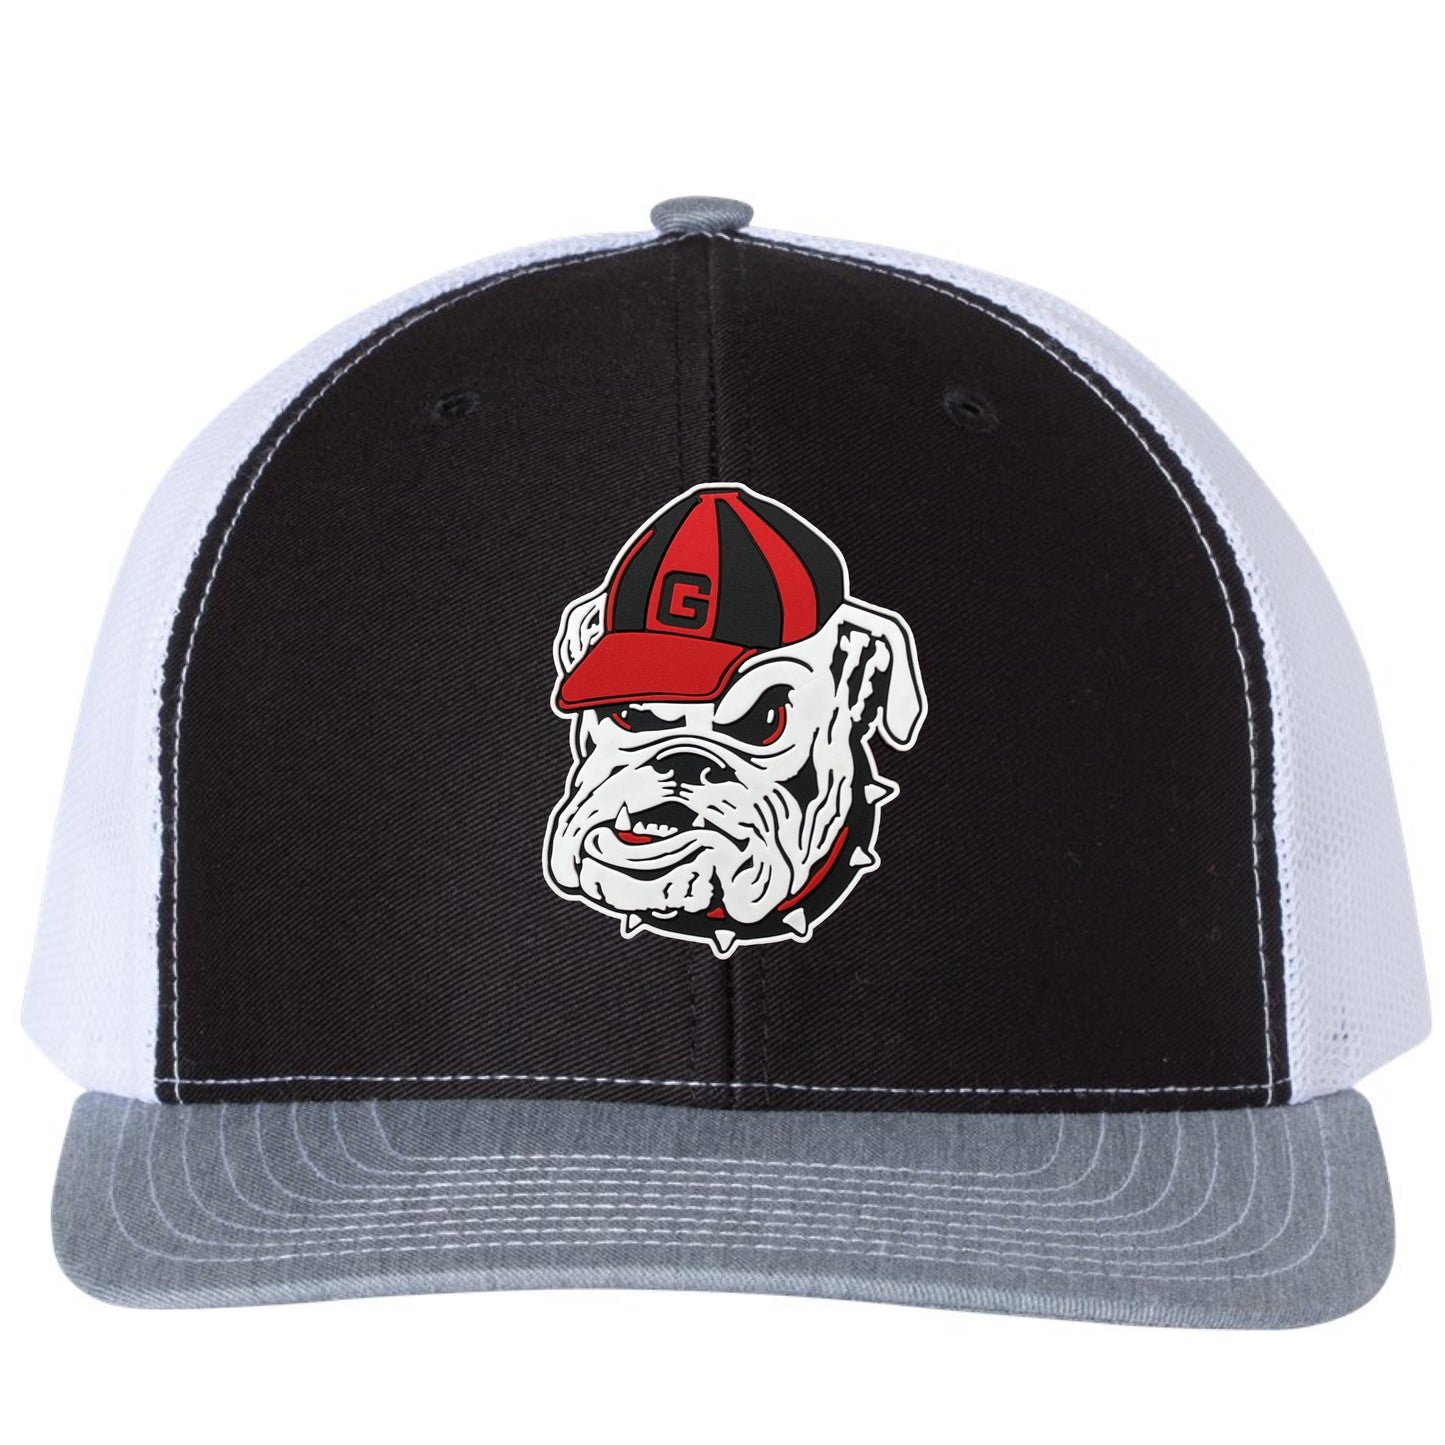 Georgia Bulldogs Vintage 3D Logo PVC Rubber Patch Hat- Black/ White/ Heather Grey - Ten Gallon Hat Co.